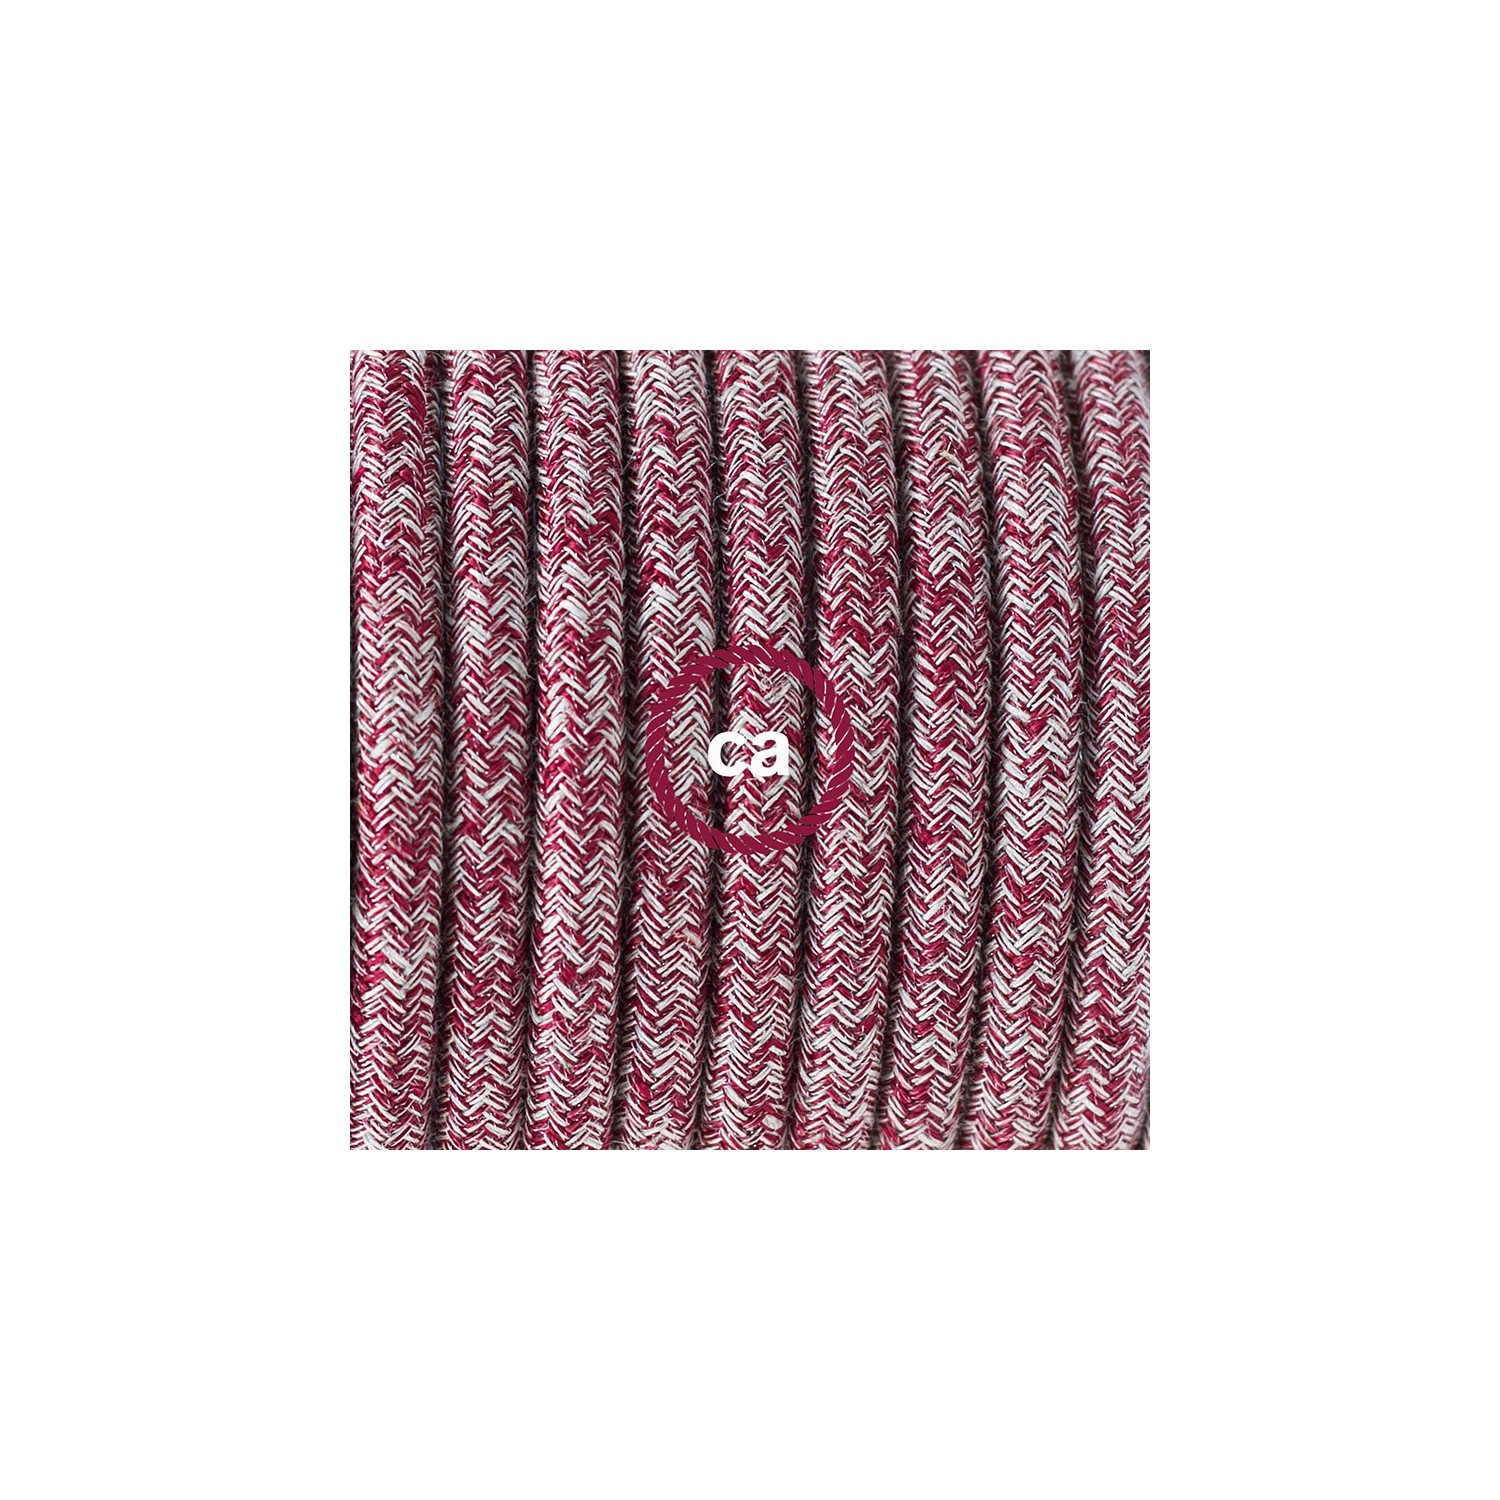 Sladdställ med fotströmbrytare, RS83 Röd glittrig Tweed Bomull och naturligt linne 3 m. Välj färg på strömbrytare och kontakt